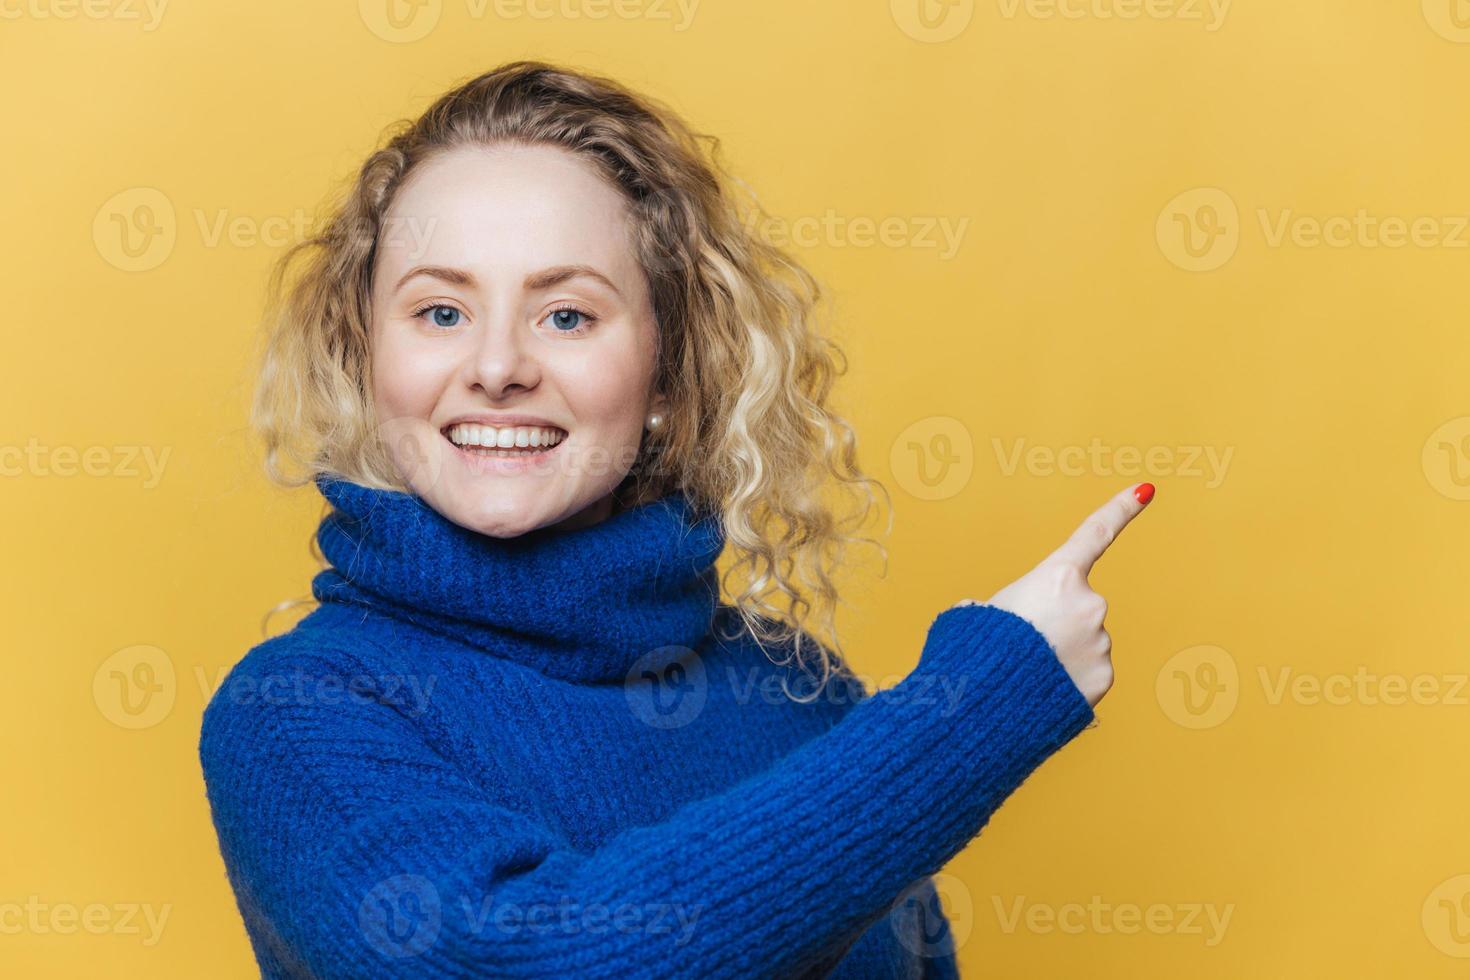 gelukkige mooie blonde jonge vrouw heeft een blije uitdrukking, draagt een casual blauwe trui, geeft aan op blanco kopieerruimte op gele lege studiomuur, adverteert iets met veel plezier. advertentie foto